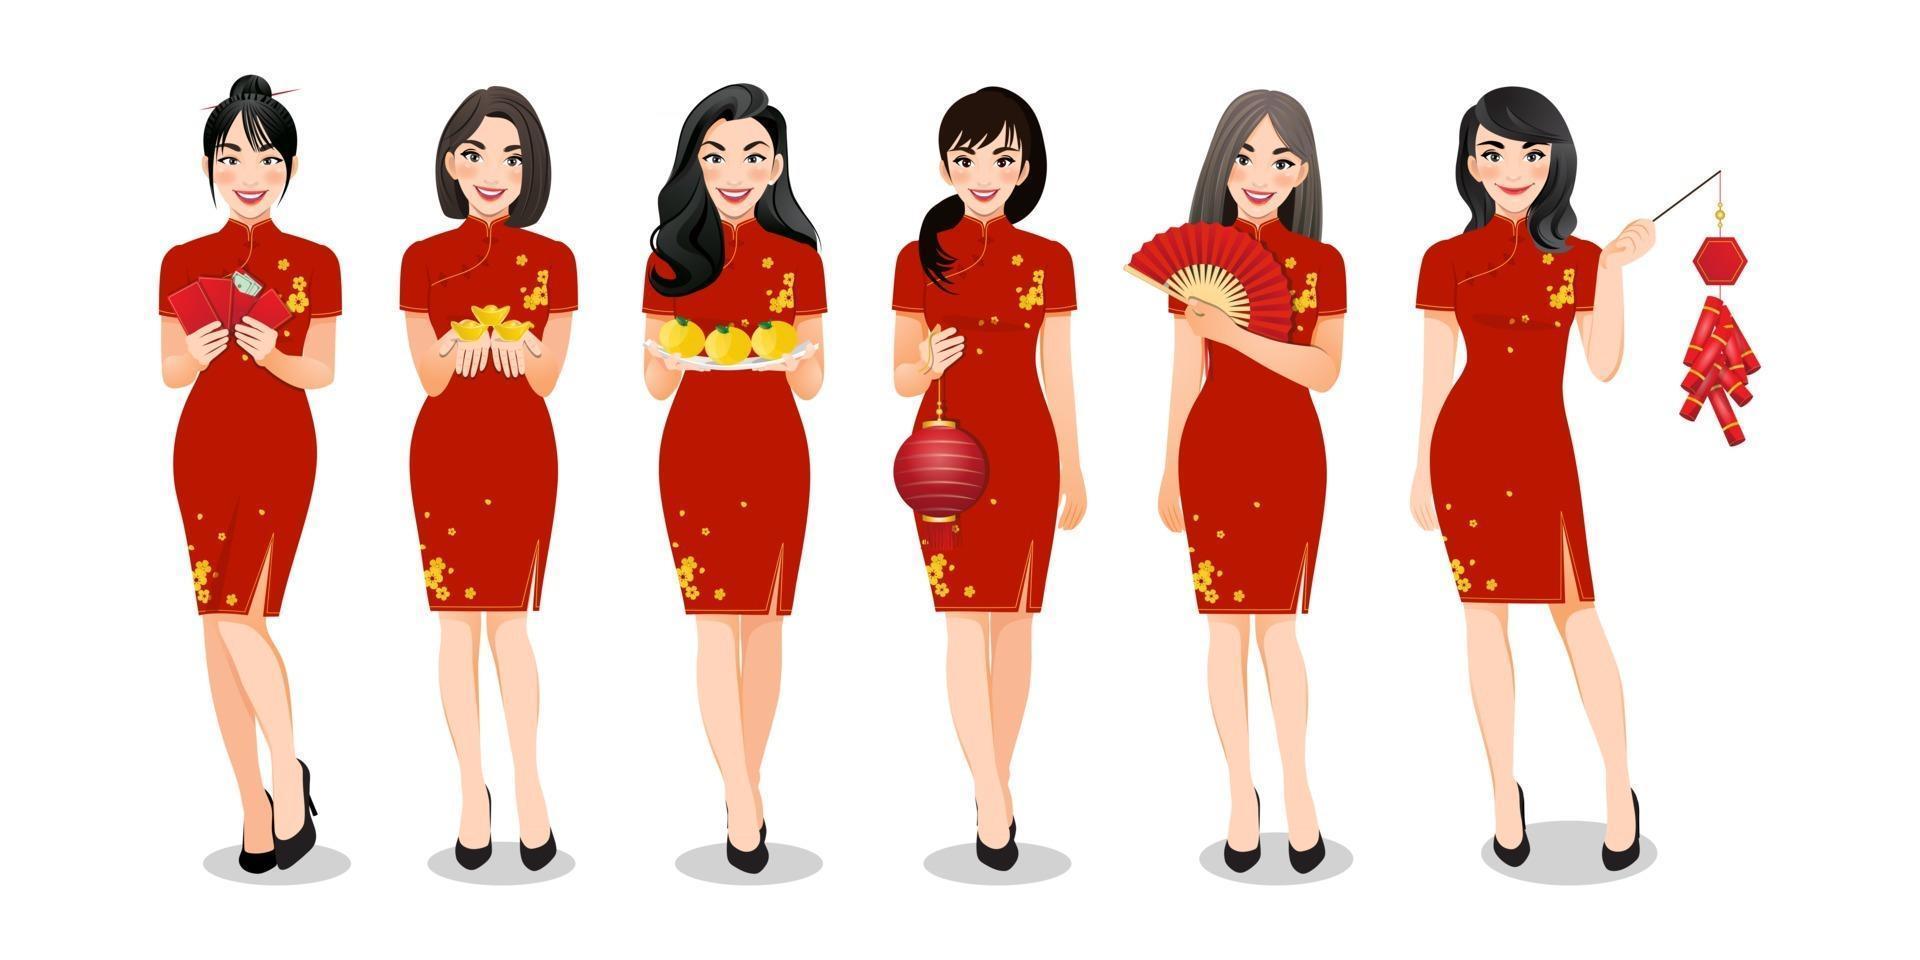 groupe de femmes chinoises tenant des éléments du nouvel an chinois dans un ensemble de vêtements de style traditionnel et différents gestes isolés illustration vectorielle vecteur